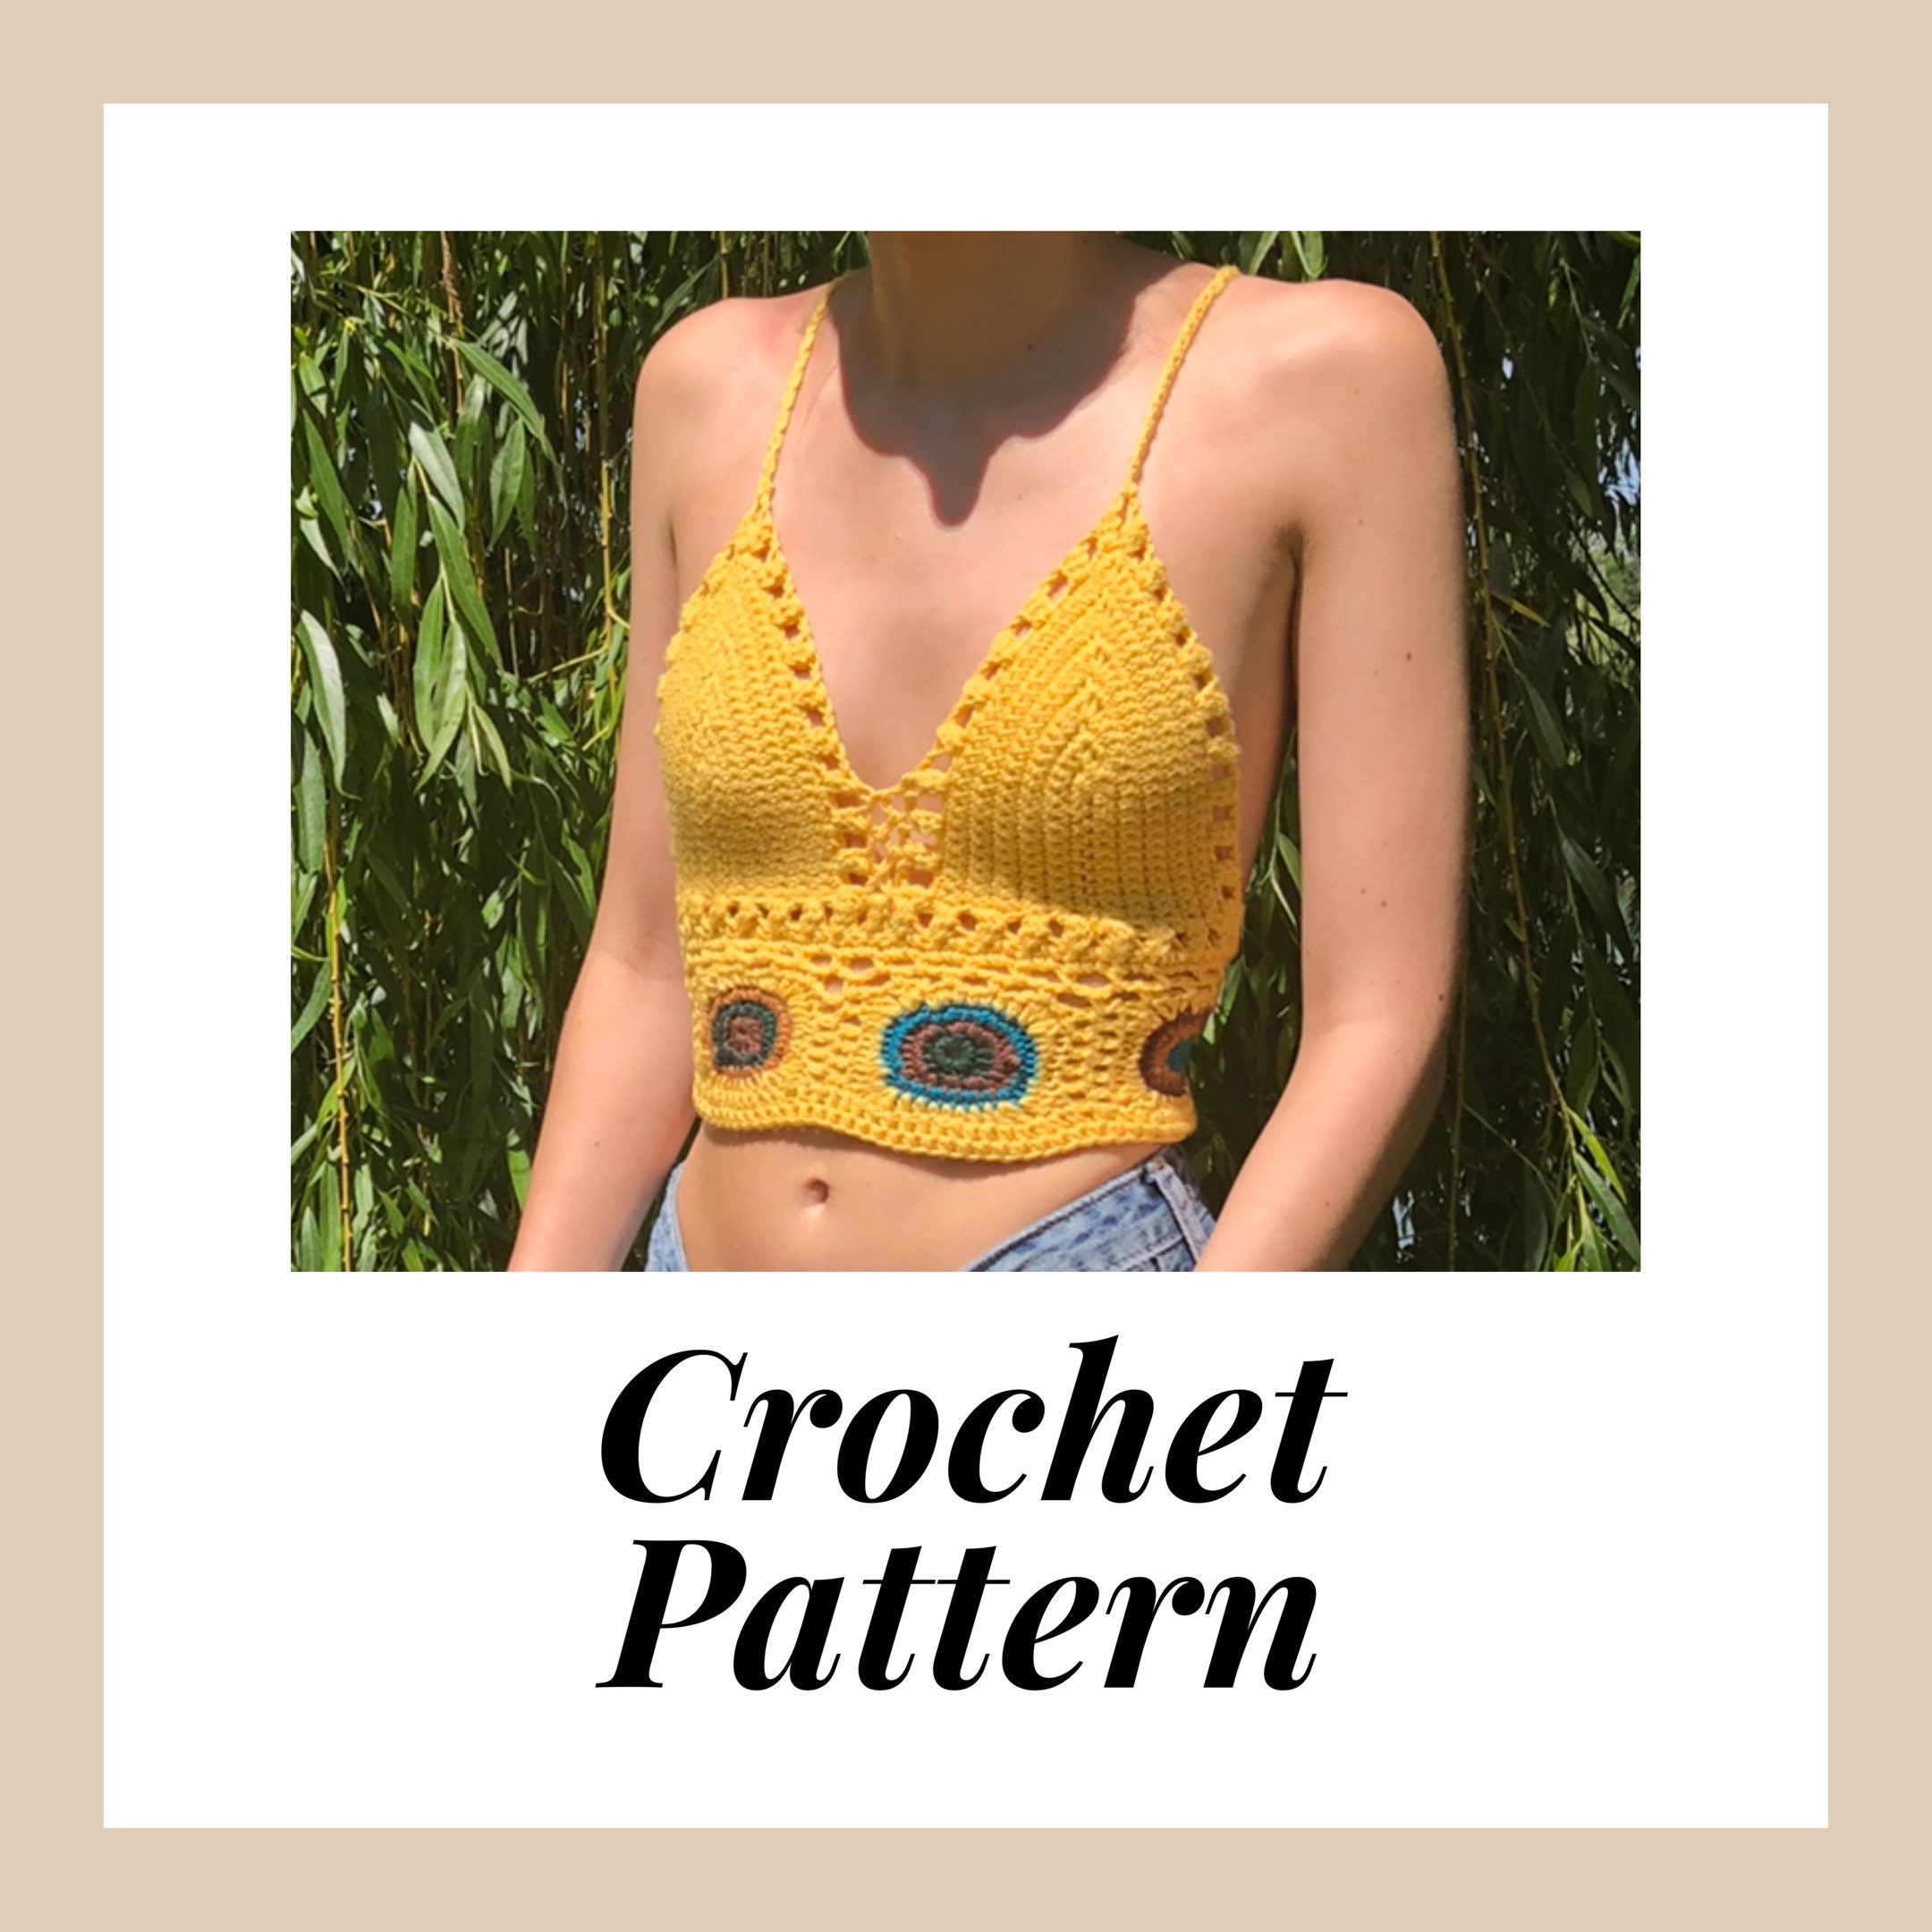 Crochet Crop Top PATTERN, Crochet Bralette PATTERN, Crochet Top PATTERN,  Festival Crop Top, Crochet Top, Crochet Bikini Top, Crochet Bra 